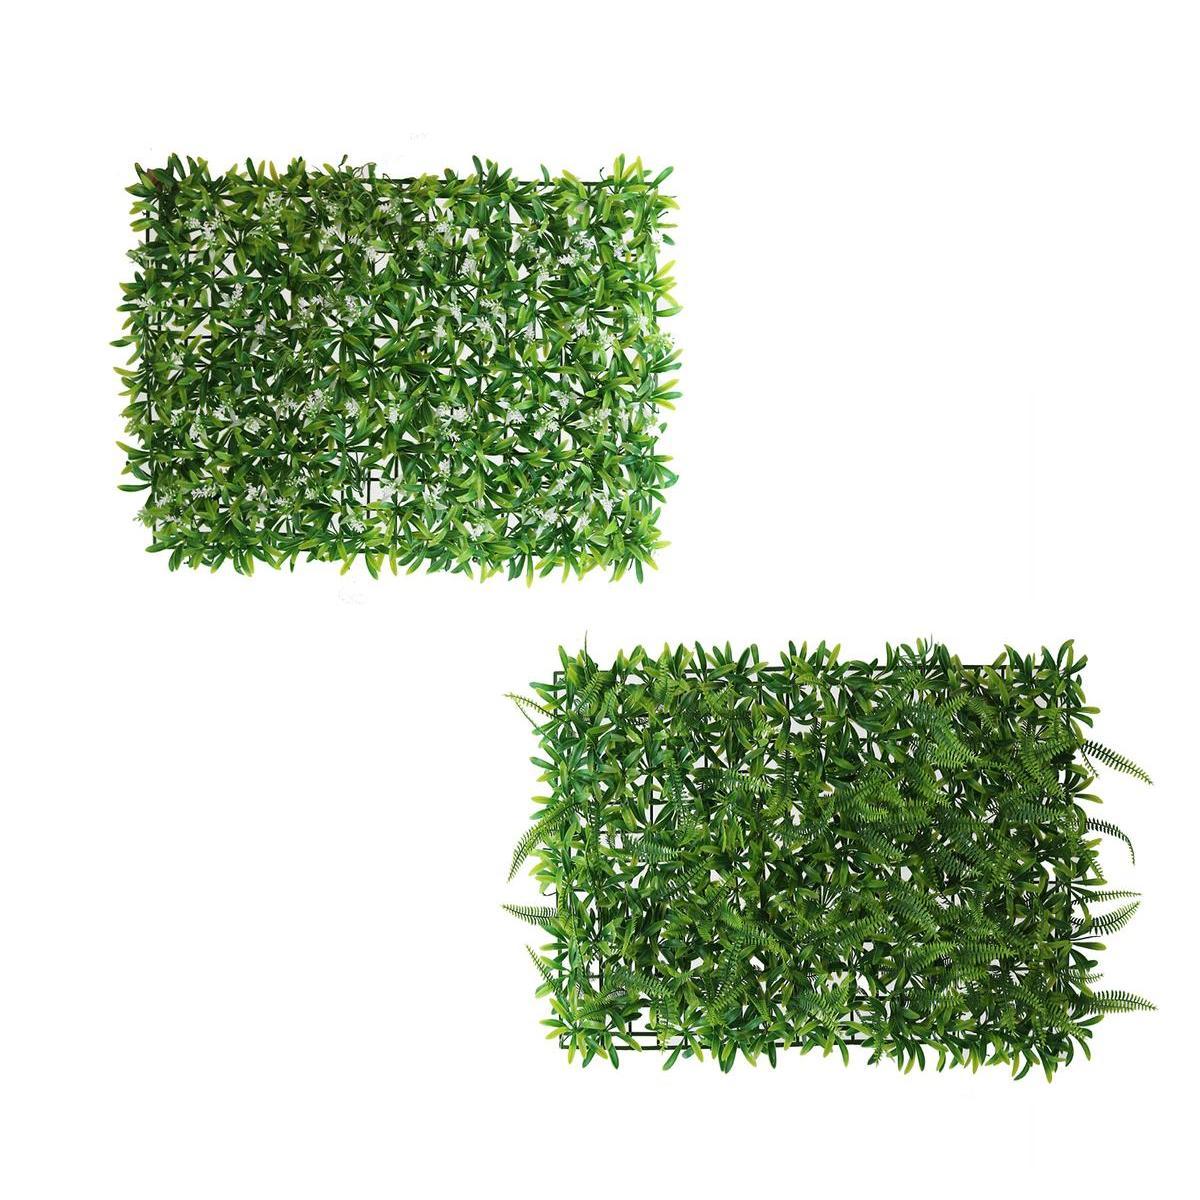 Mur végétal feuillage - H 40 cm - Vert